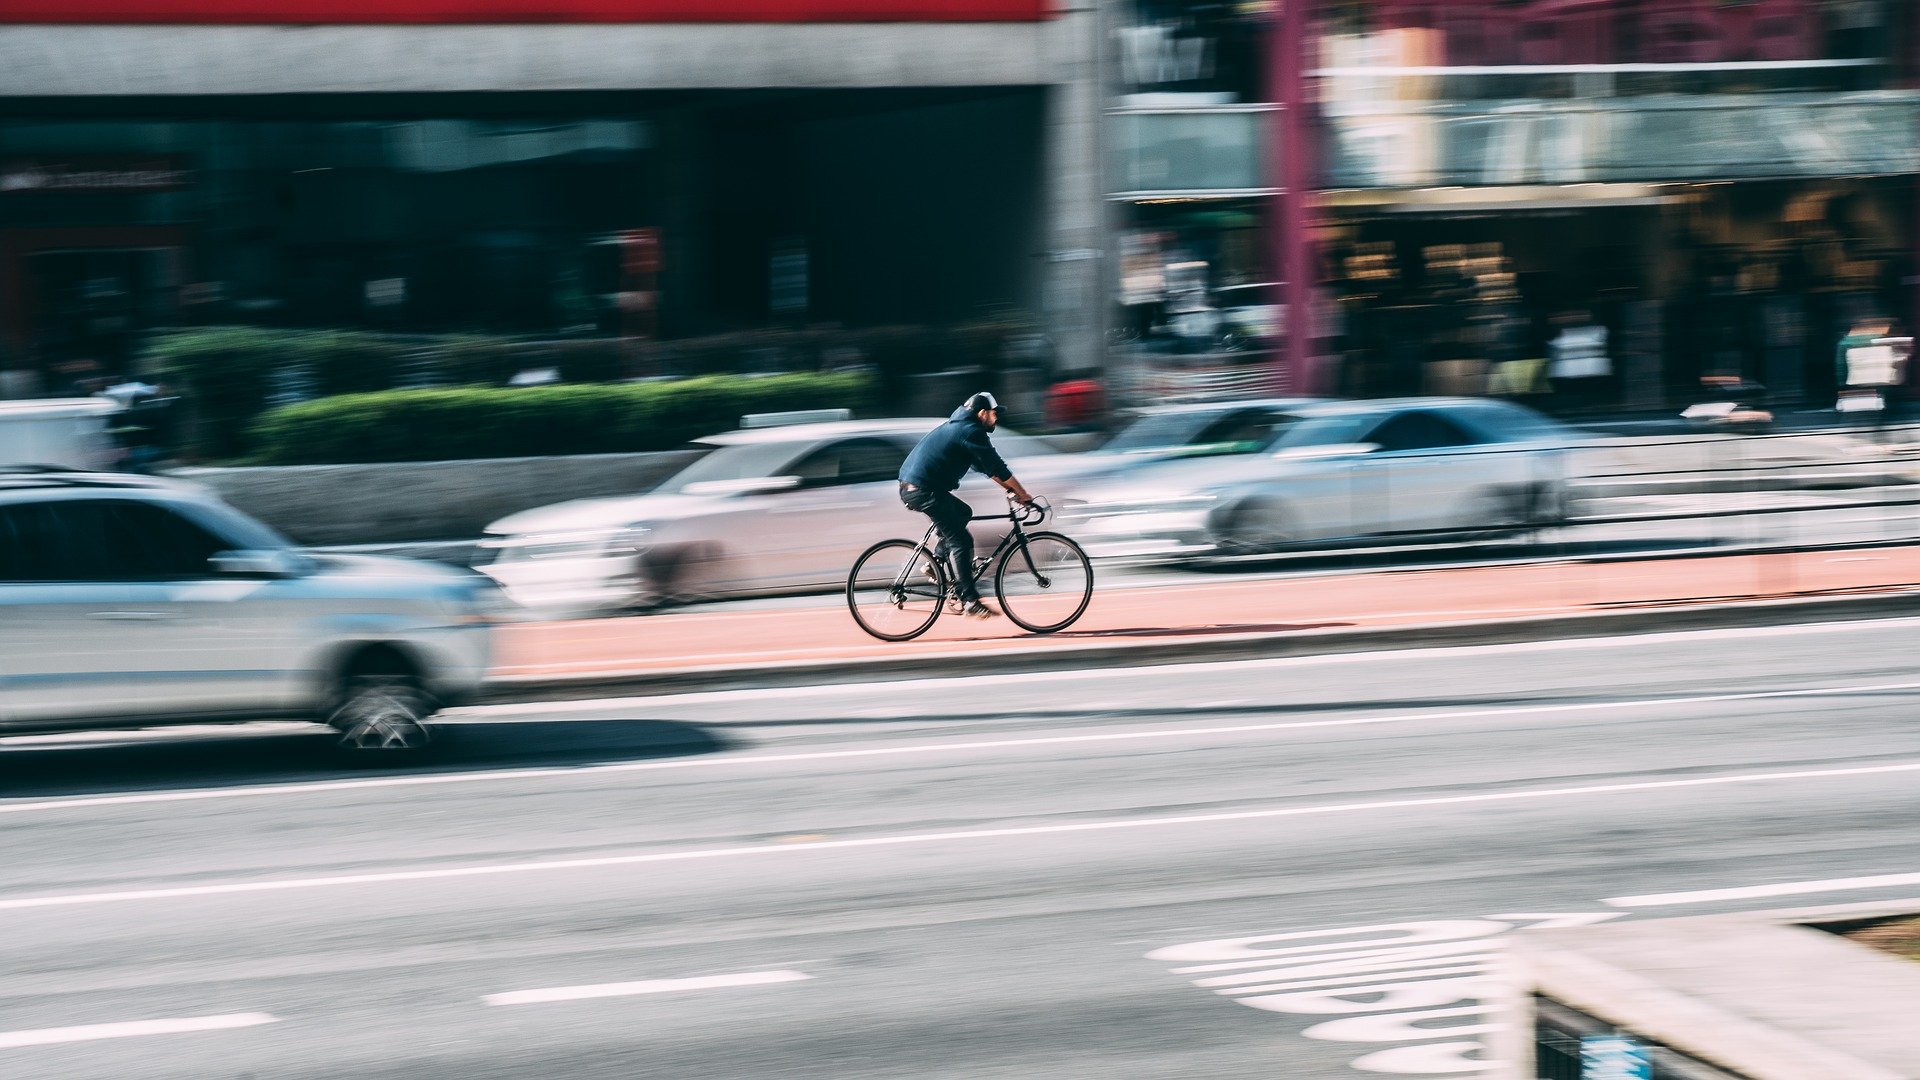 Vemos um ciclista no meio de uma avenida com lojas e carros ao redor (imagem ilustrativa). Texto: ideias de negócios com pouco dinheiro.